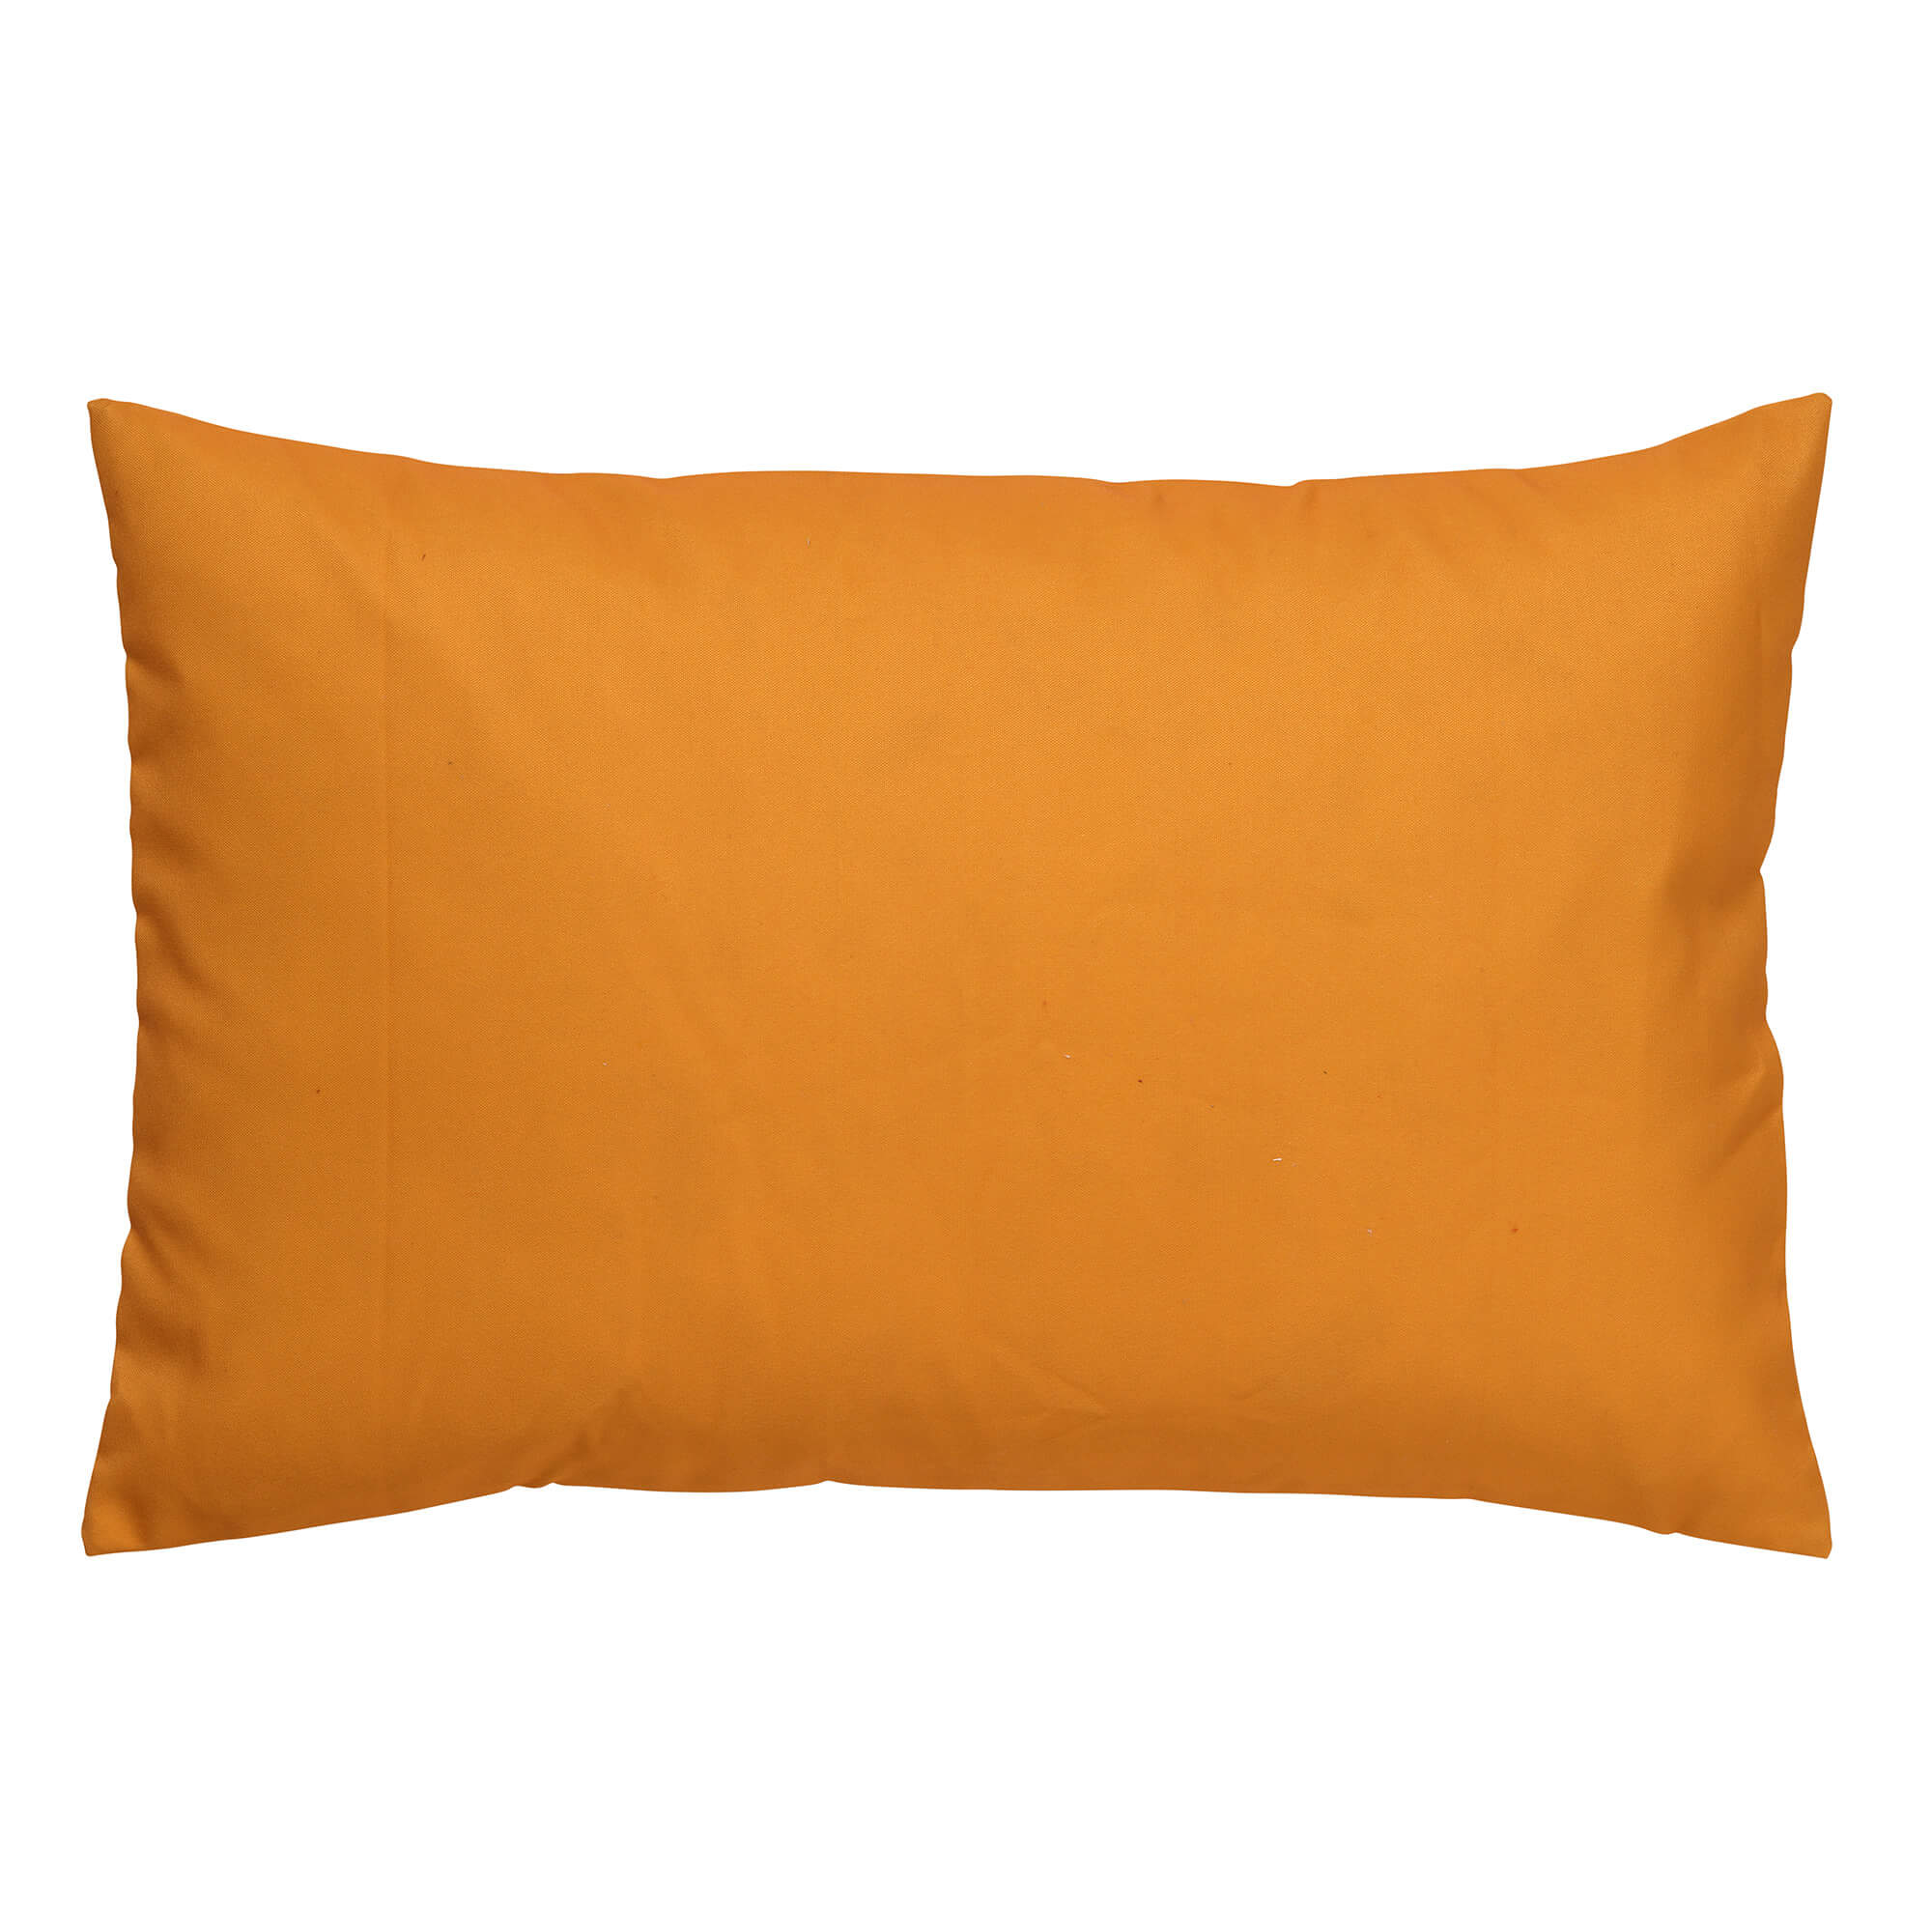 SANTORINI - Outdoor Cushion cover 40x60 cm - waterproof & UV-resistant - Golden Glow - yellow-ochre